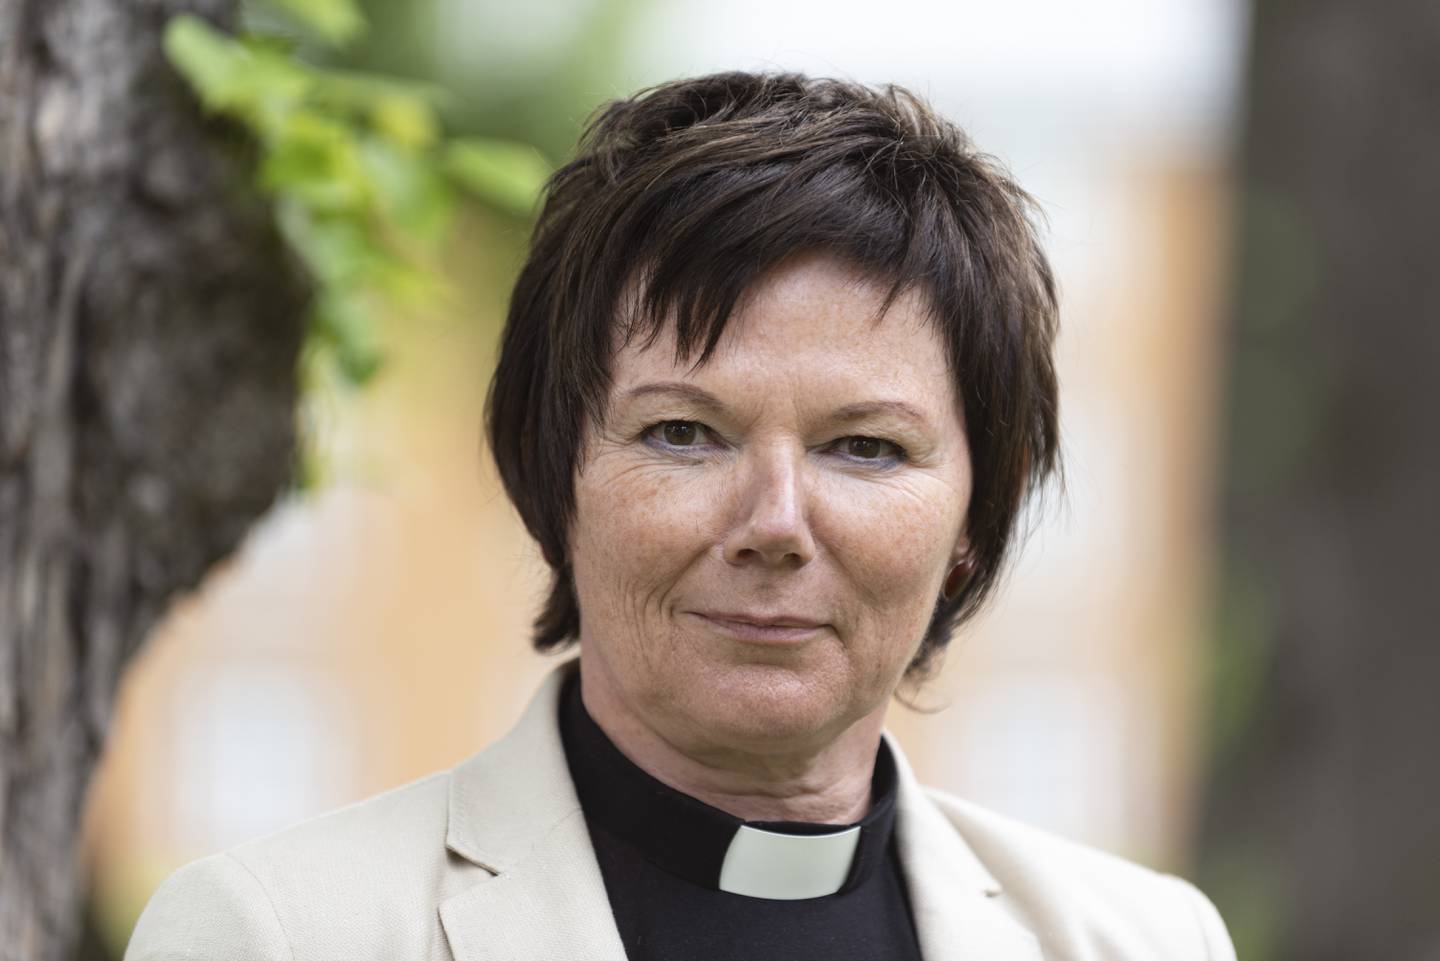 Ragnhild Jepsen er biskopenes favoritt til å bli ny biskop

Foto: Ned Alley / NTB